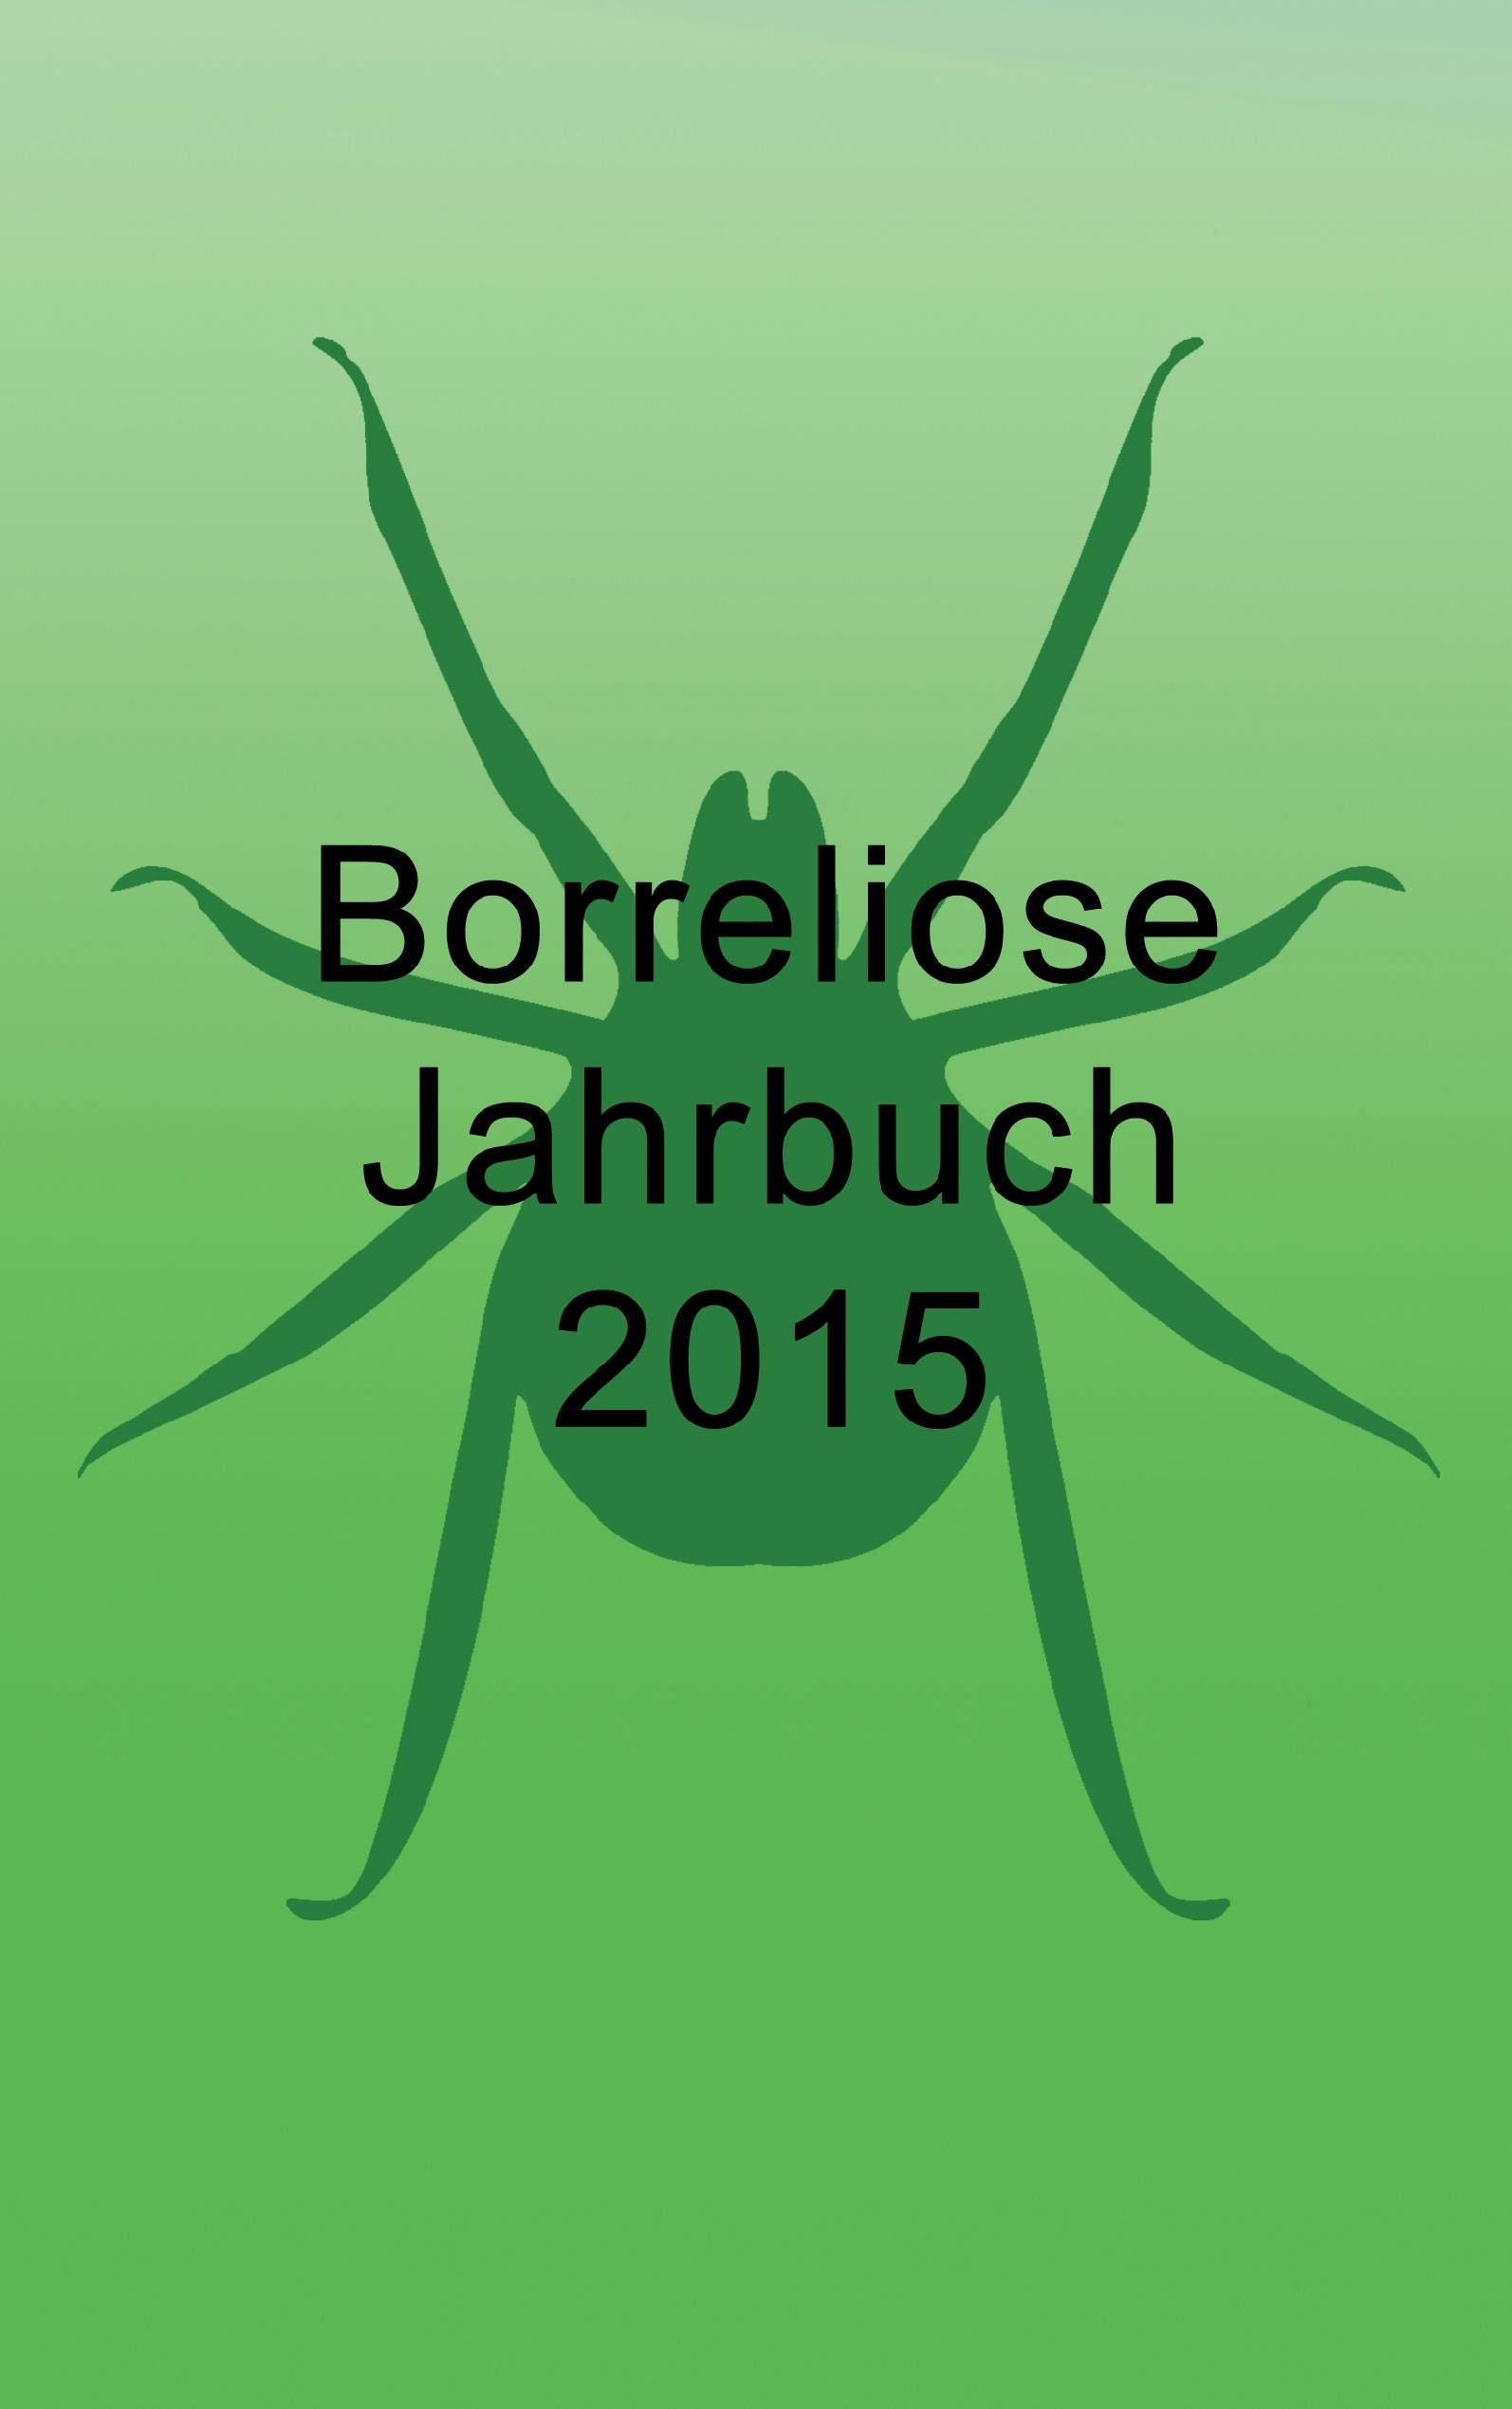 Borreliose Jahrbuch 2015 - Ute Fischer, Bernhard Siegmund